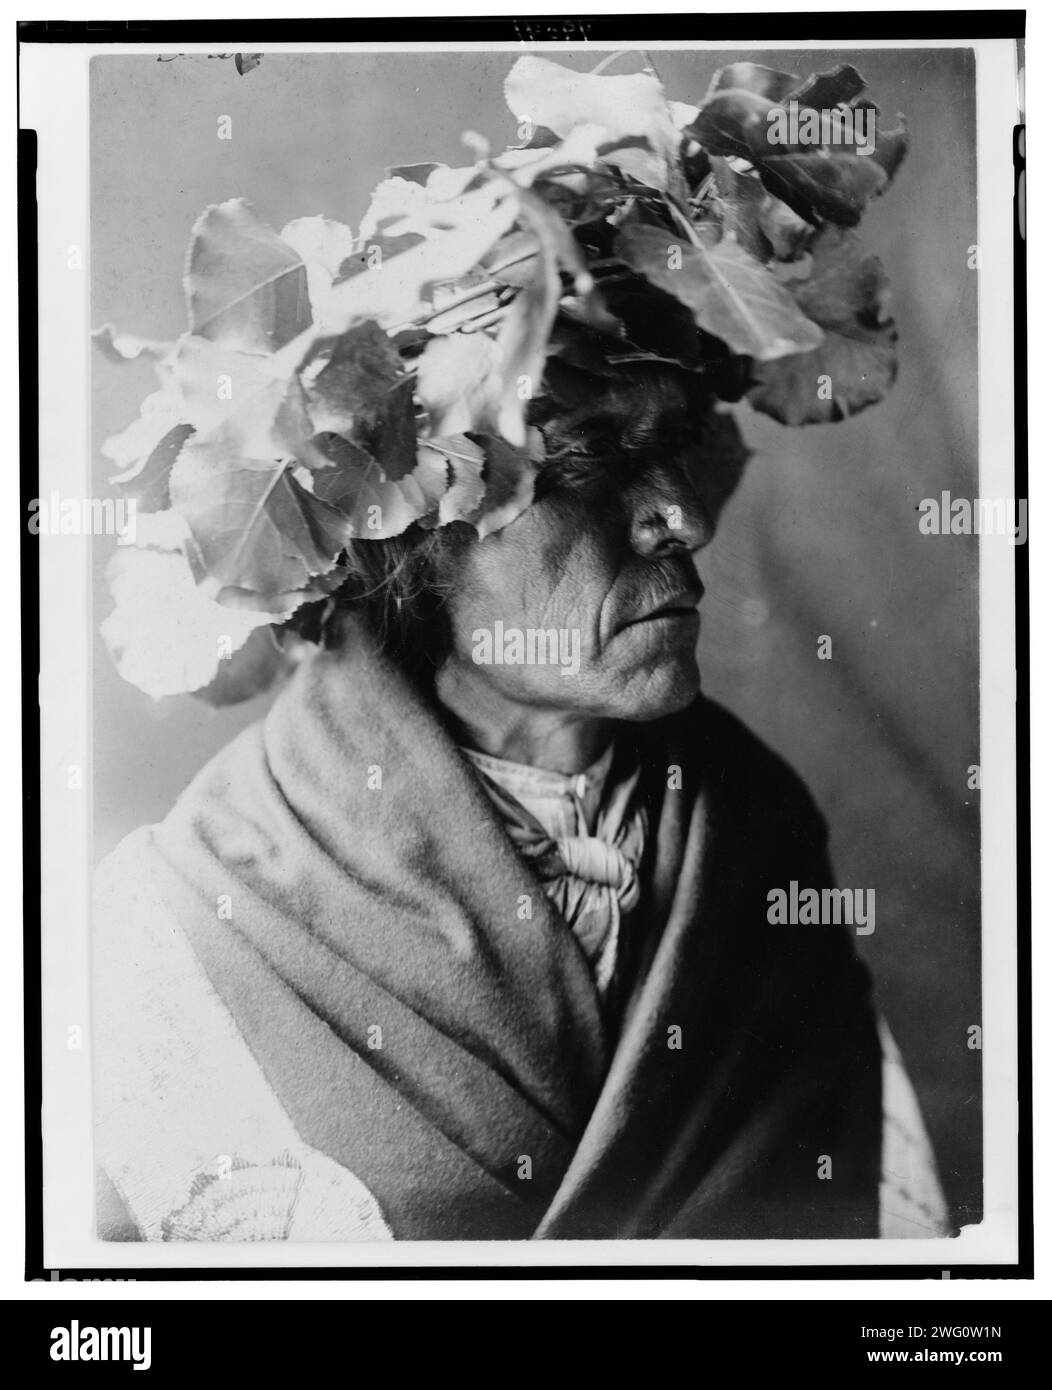 Stachelschwein-Cheyenne, 1910. Stachelschwein, ein Cheyenne-Mann, Kopf-und-Schultern-Porträt, nach rechts gerichtet, trägt einen Kranz aus Baumwollholzblättern auf dem Kopf, möglicherweise um seinen Kopf während eines Sonnentanzes vor der Sonne zu schützen. Stockfoto